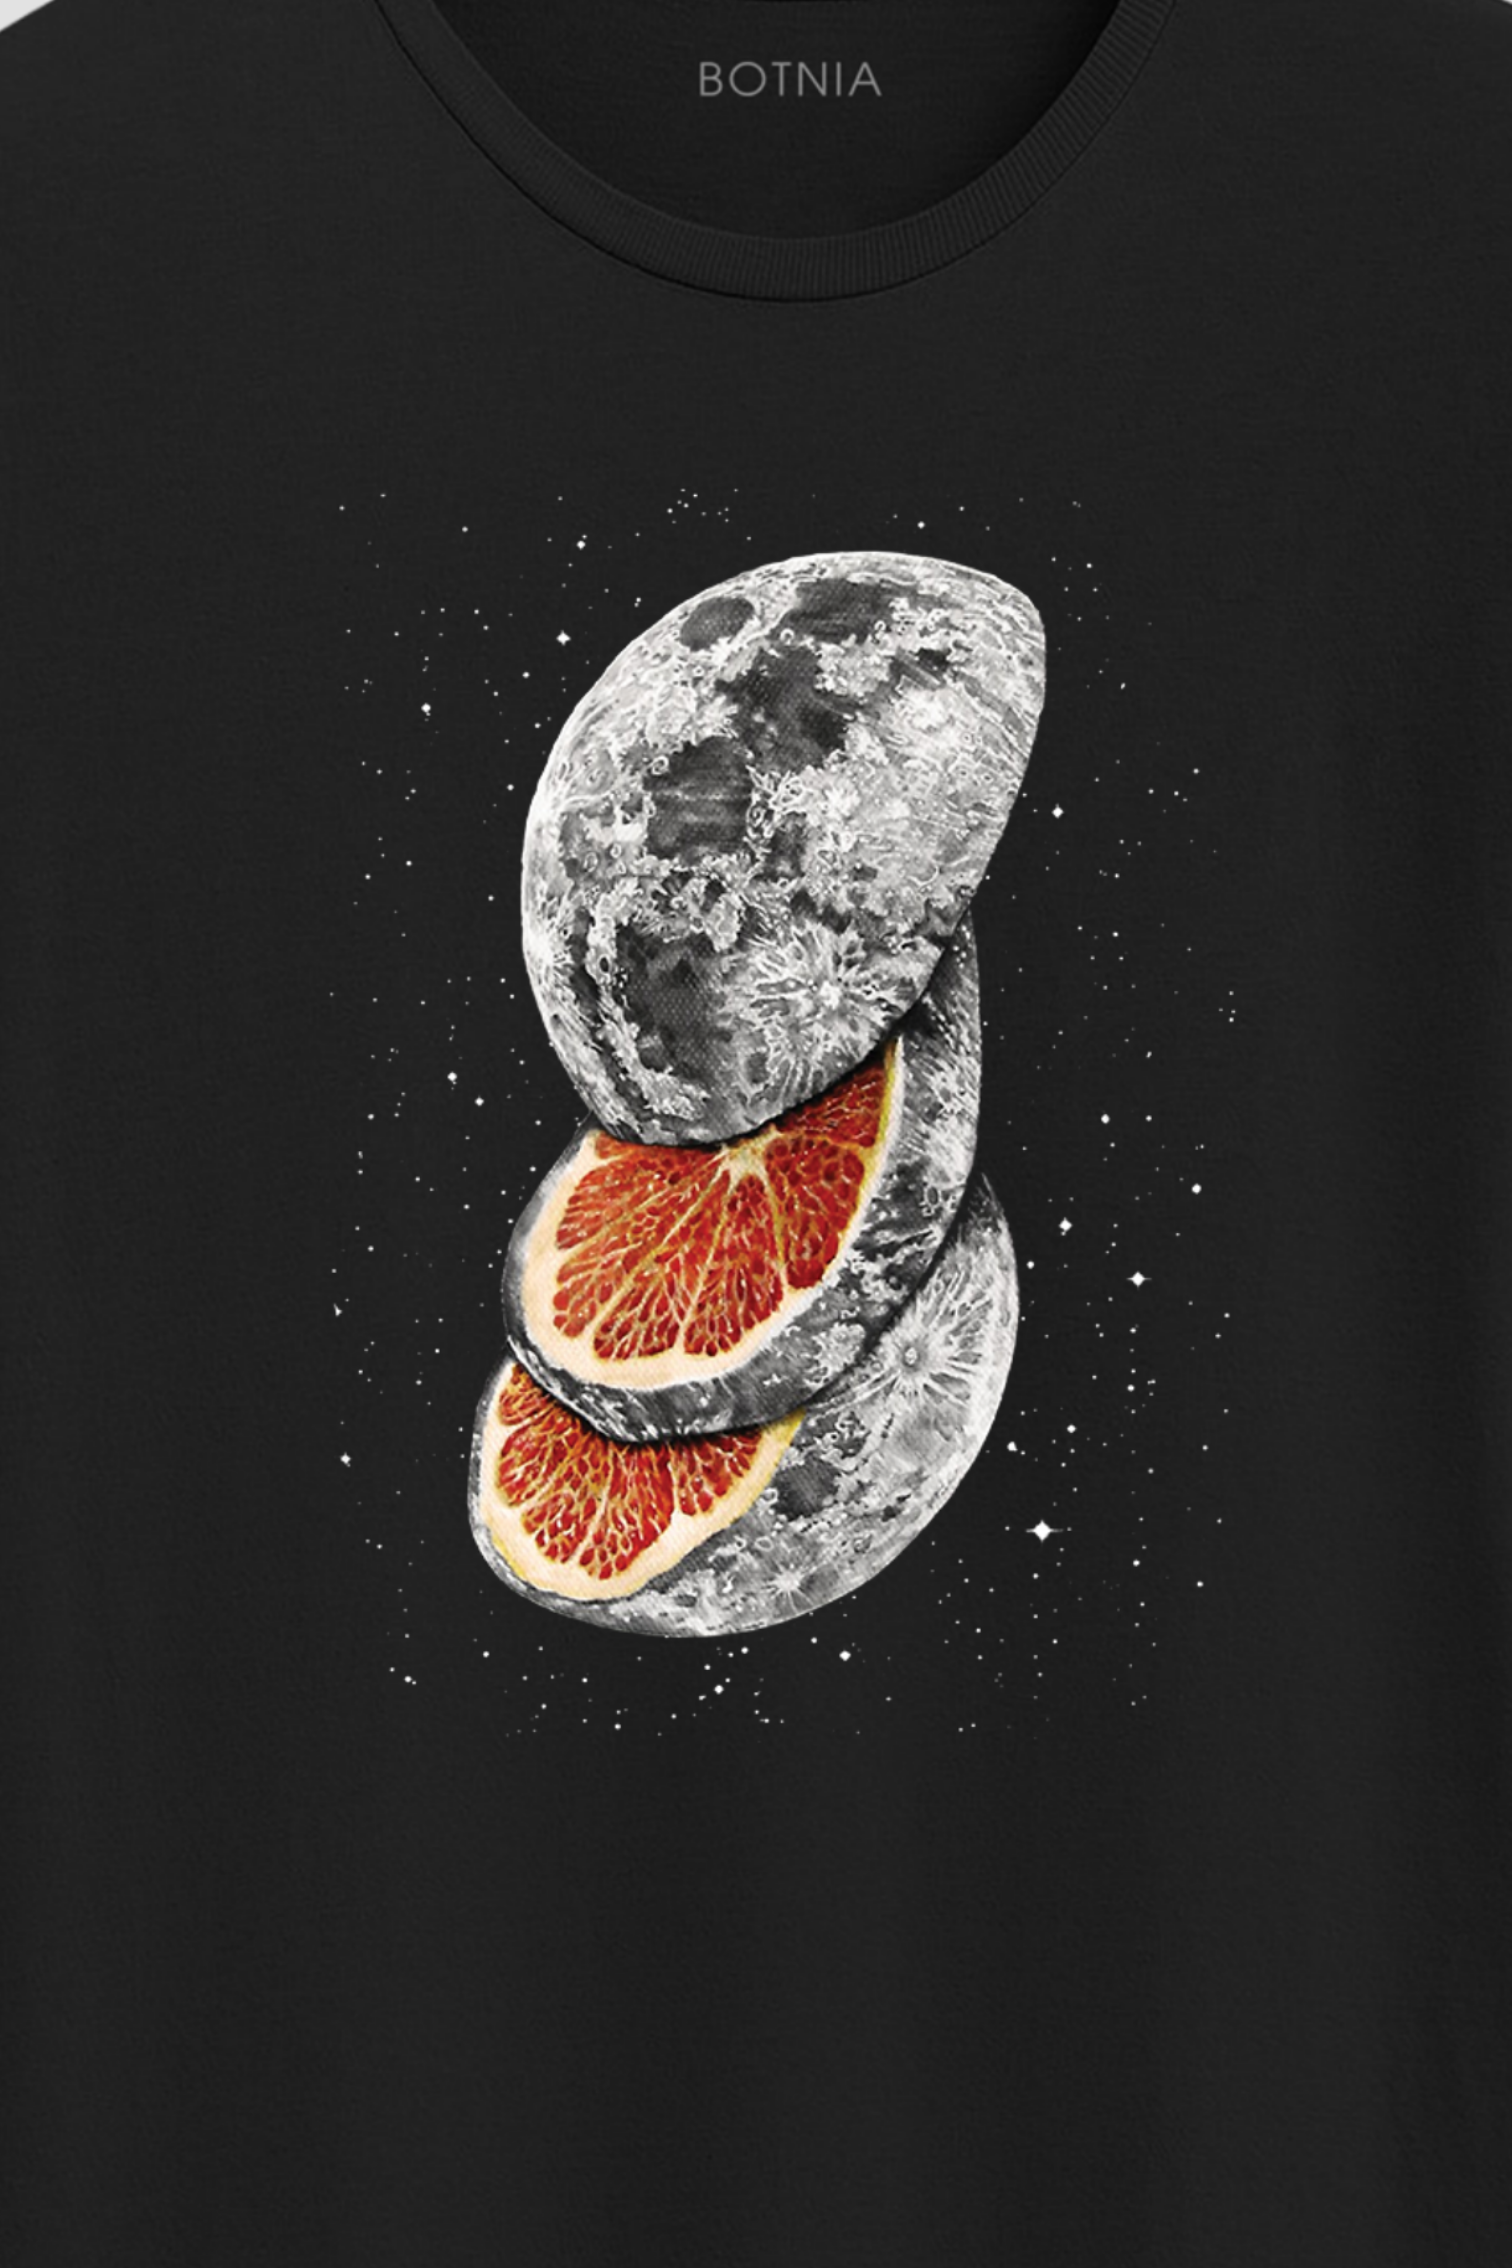 Moon Slice- Half sleeve t-shirt